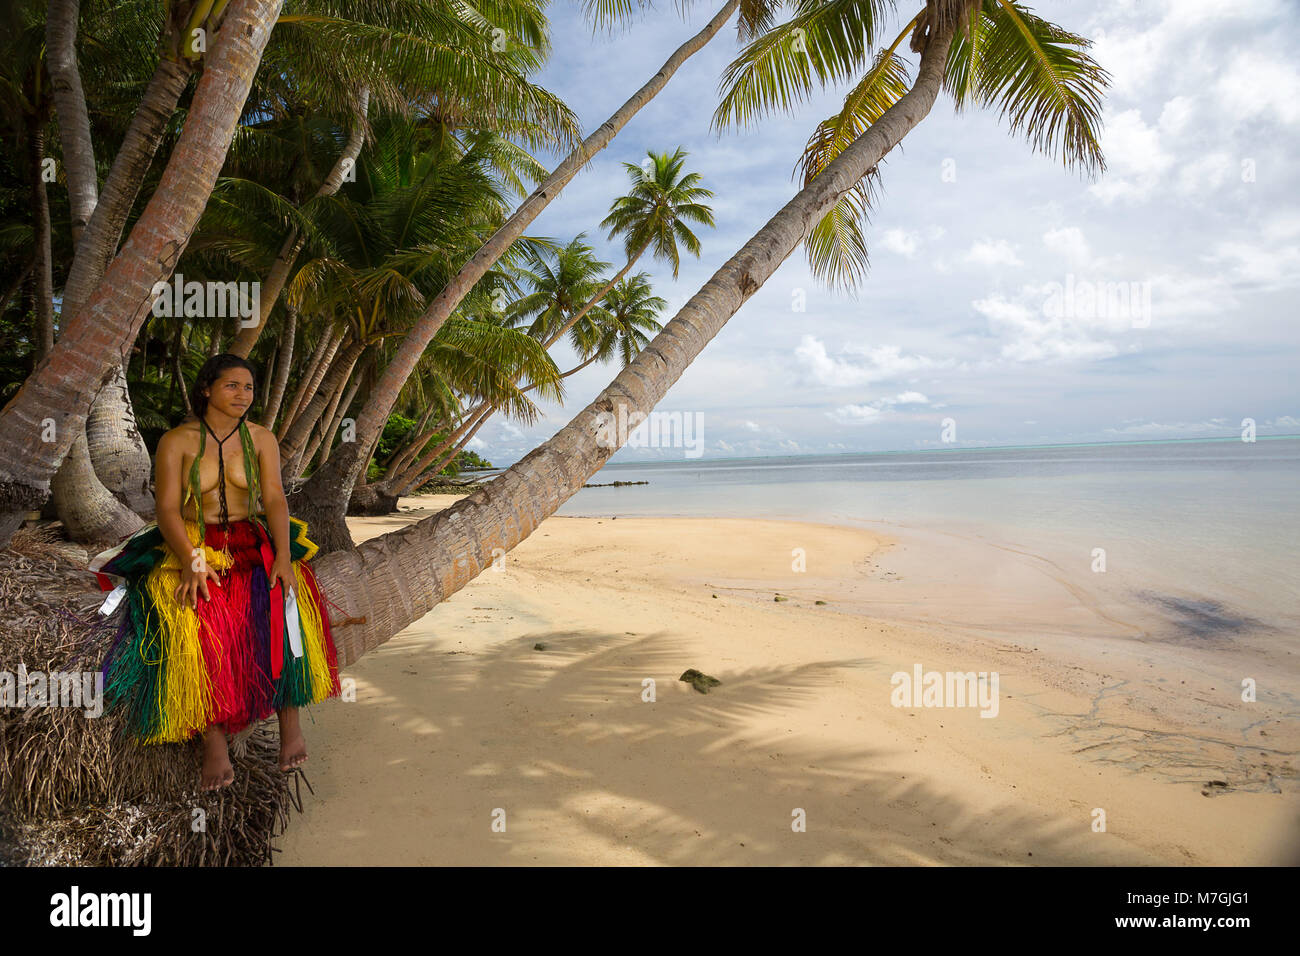 Dieses junge Mädchen (MR) ist in einem traditionellen Outfit für kulturelle Zeremonien auf der Insel Yap in Mikronesien. Stockfoto